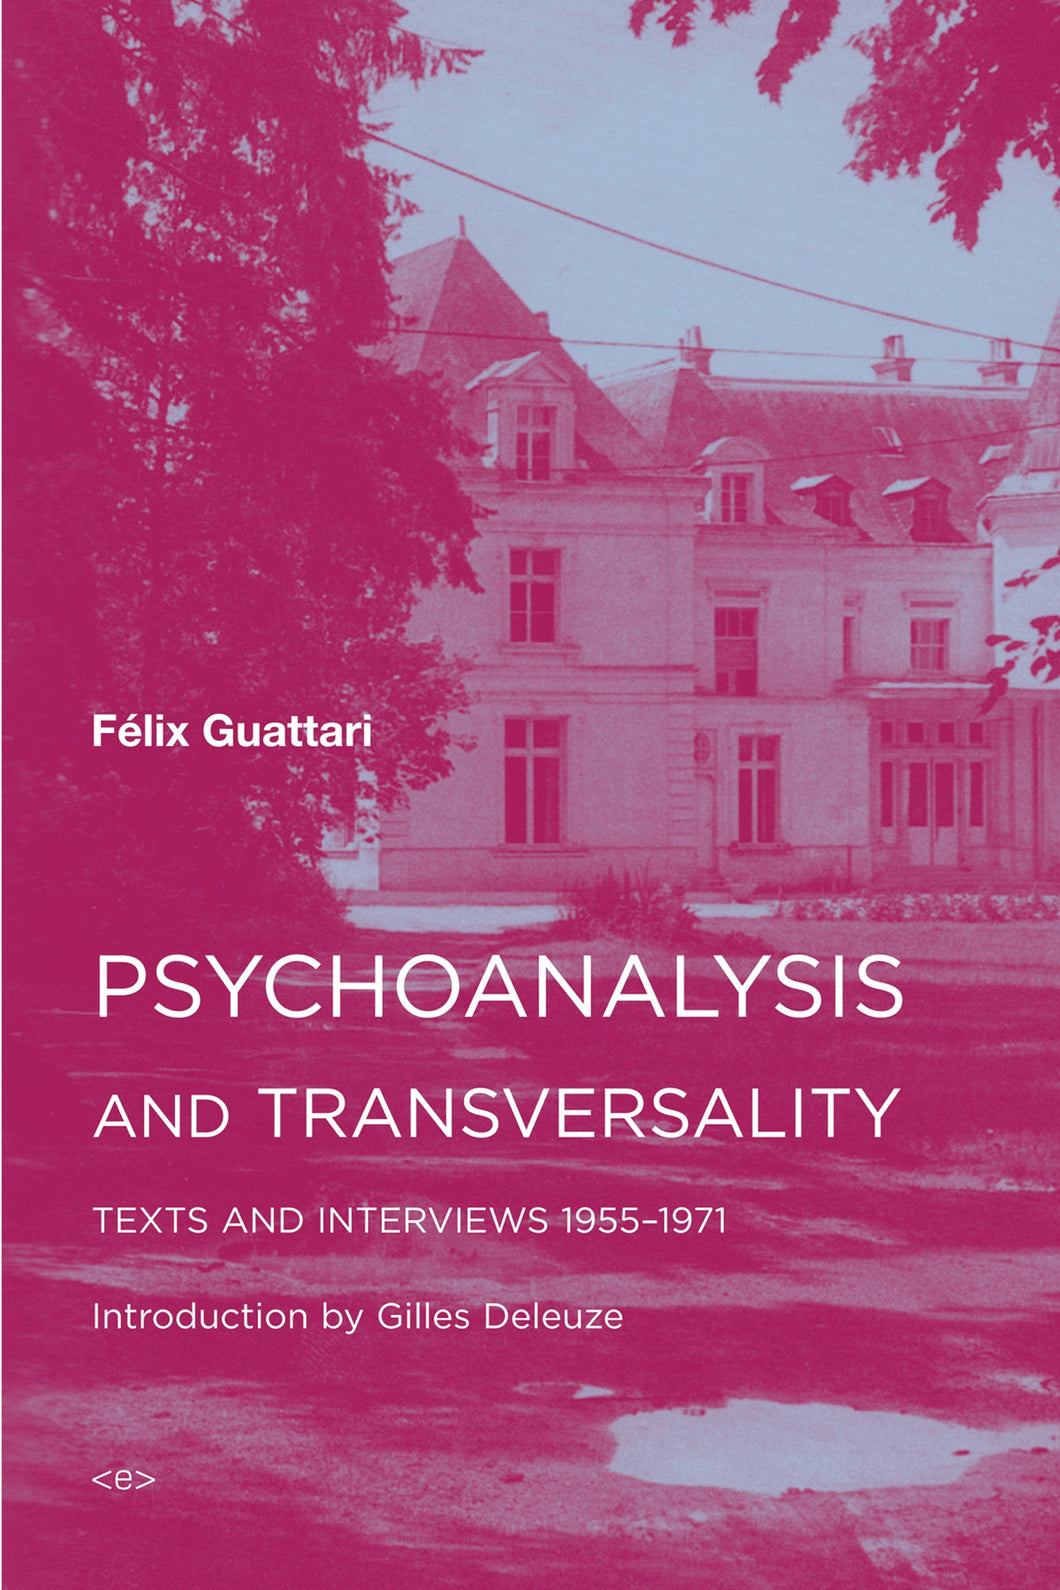 Psychoanalysis and Transversality: Texts and Interviews 1955–1971 ร้านหนังสือและสิ่งของ เป็นร้านหนังสือภาษาอังกฤษหายาก และร้านกาแฟ หรือ บุ๊คคาเฟ่ ตั้งอยู่สุขุมวิท กรุงเทพ